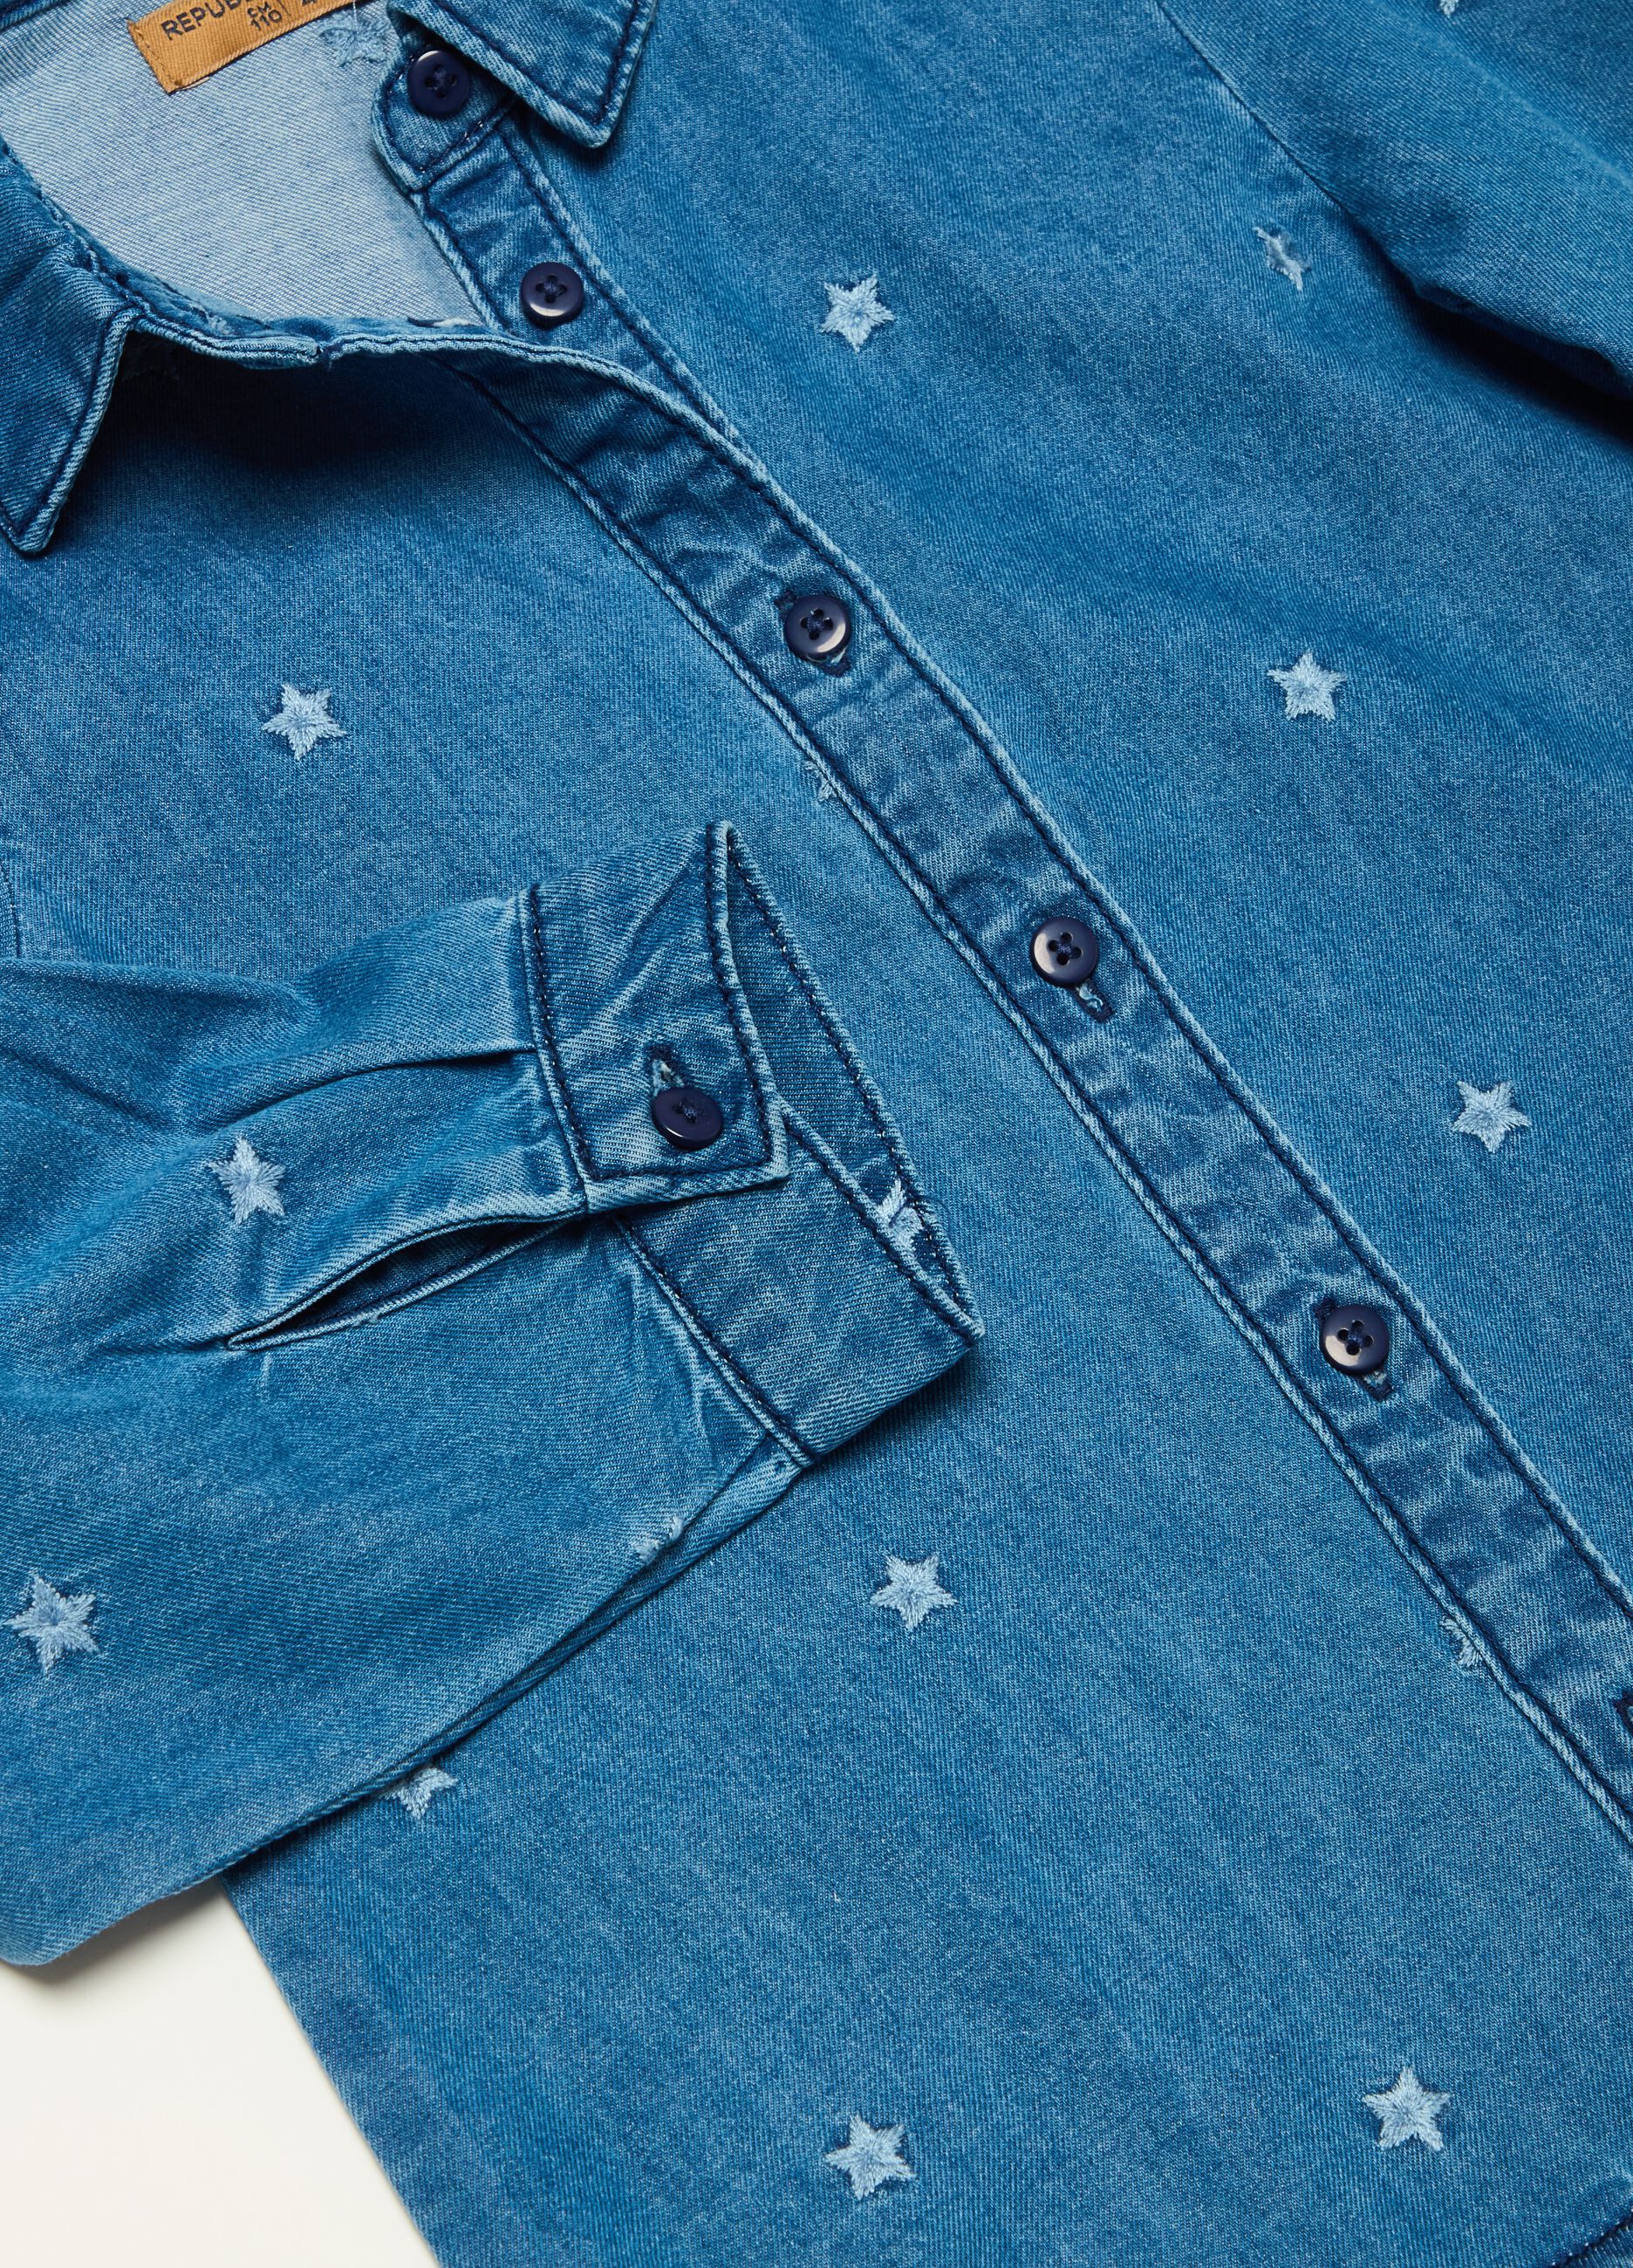 Camisa de denim con bordado estrellas